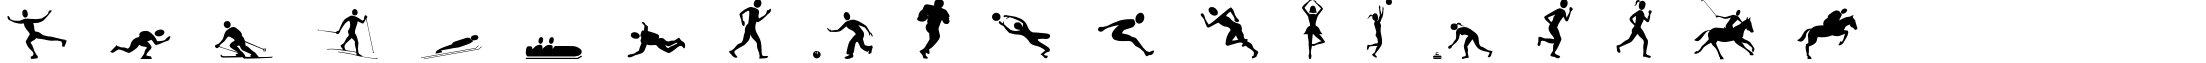 Пример написания английского алфавита шрифтом SportsFigures